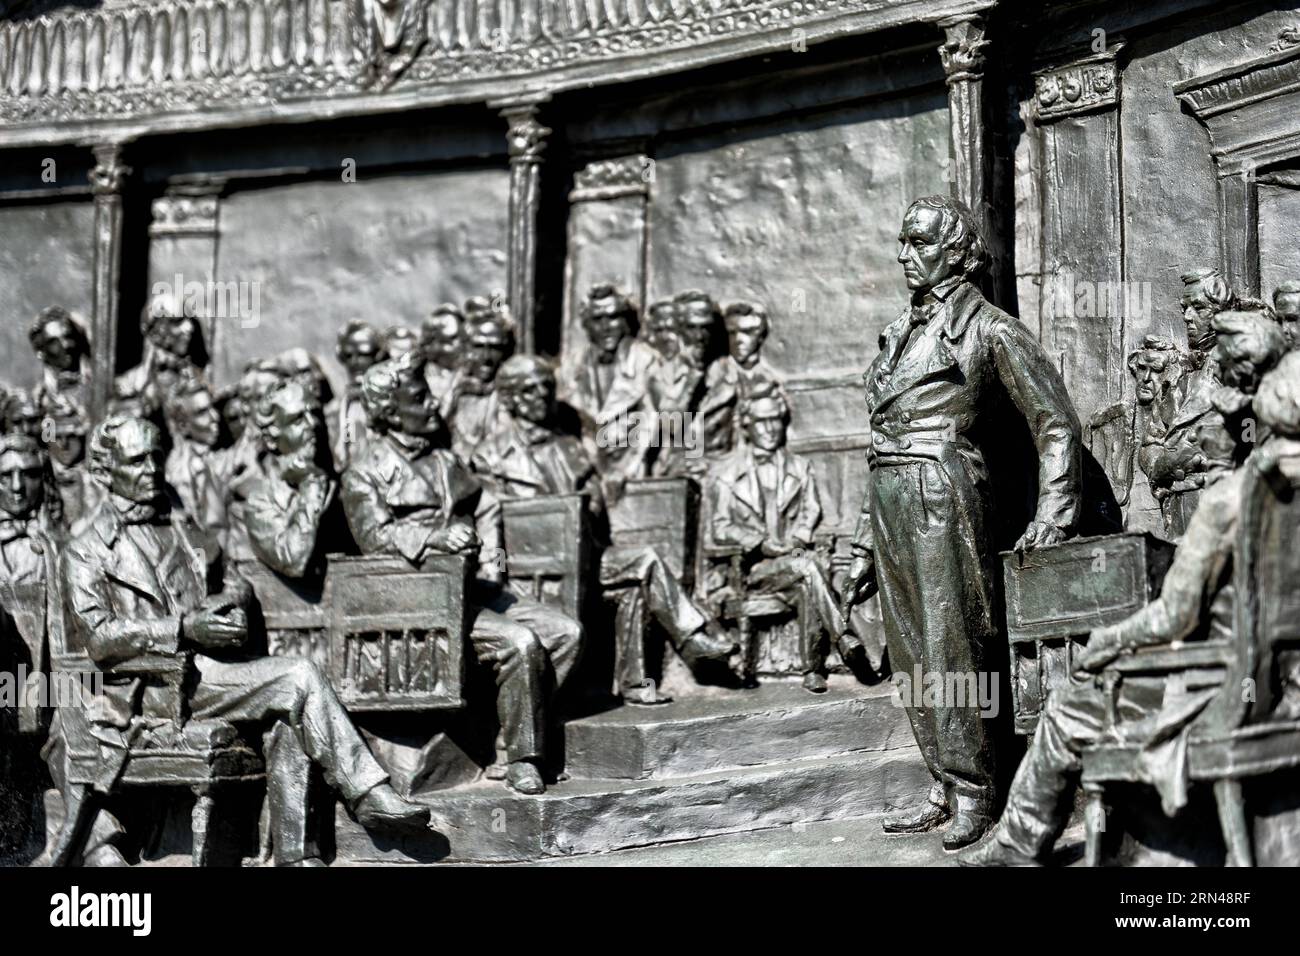 WASHINGTON, DC - die Daniel Webster Statue, an der Kreuzung von Massachusetts Avenue und Rhode Island Avenue im Nordwesten von Washington DC. Daniel Webster (* 18. Januar 1782 bis 24. Oktober 1852) war ein US-amerikanischer Anwalt und Staatsmann, der New Hampshire und Massachusetts im US-Kongress vertrat und als US-Staatssekretär unter den Präsidenten William Henry Harrison, John Tyler und Millard Fillmore diente. Als einer der prominentesten amerikanischen Anwälte des 19. Jahrhunderts argumentierte er zwischen 1814 und seinem Tod 1852 über 200 Fälle vor dem Obersten Gerichtshof der Vereinigten Staaten. Stockfoto